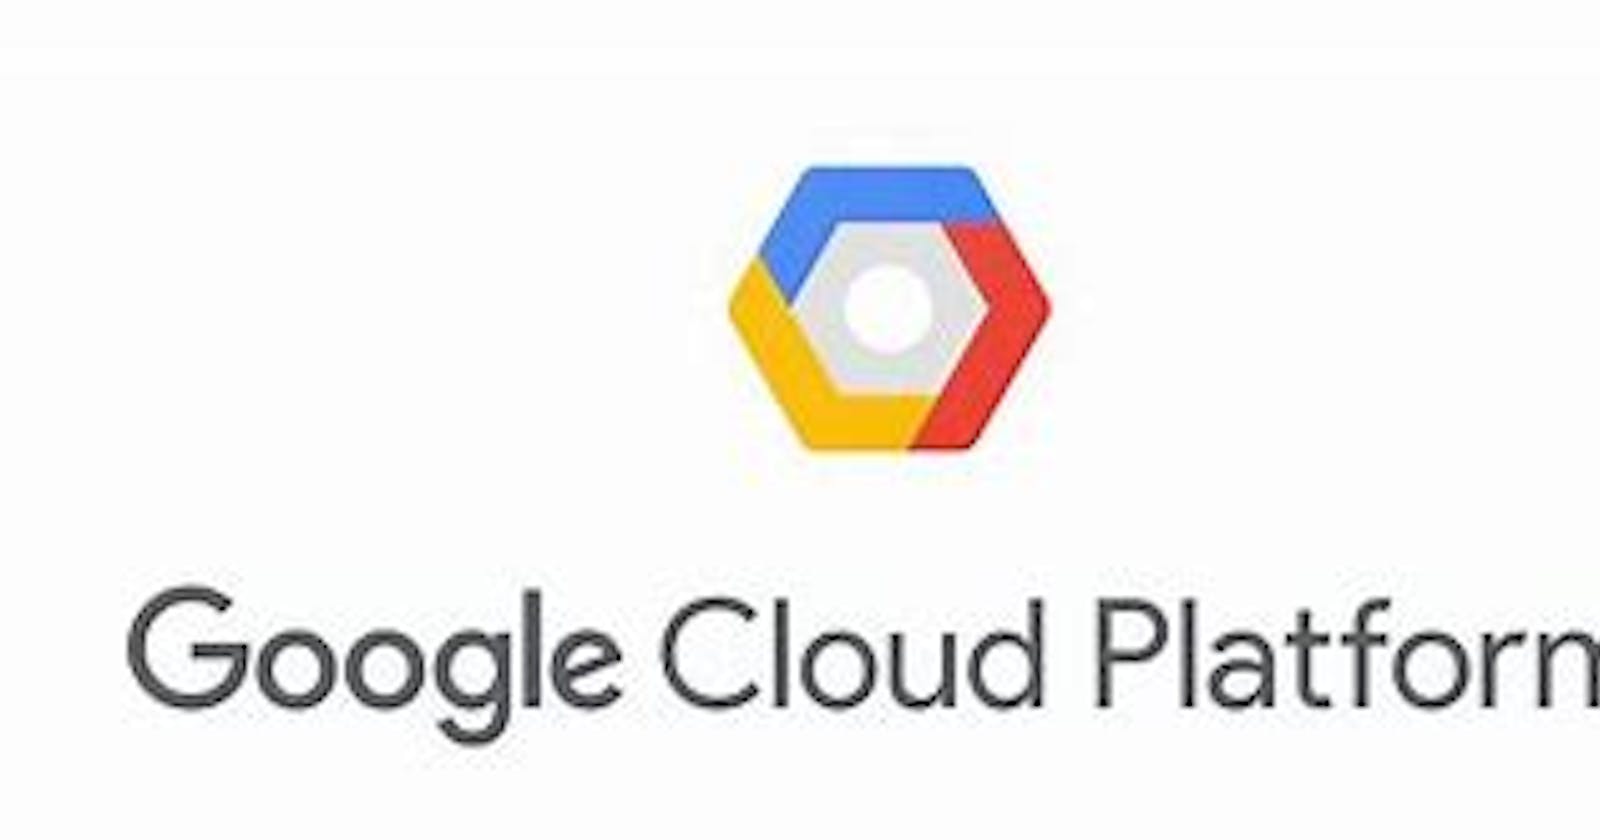 Hosting Python Flask Applications on Google Cloud Platform for Free